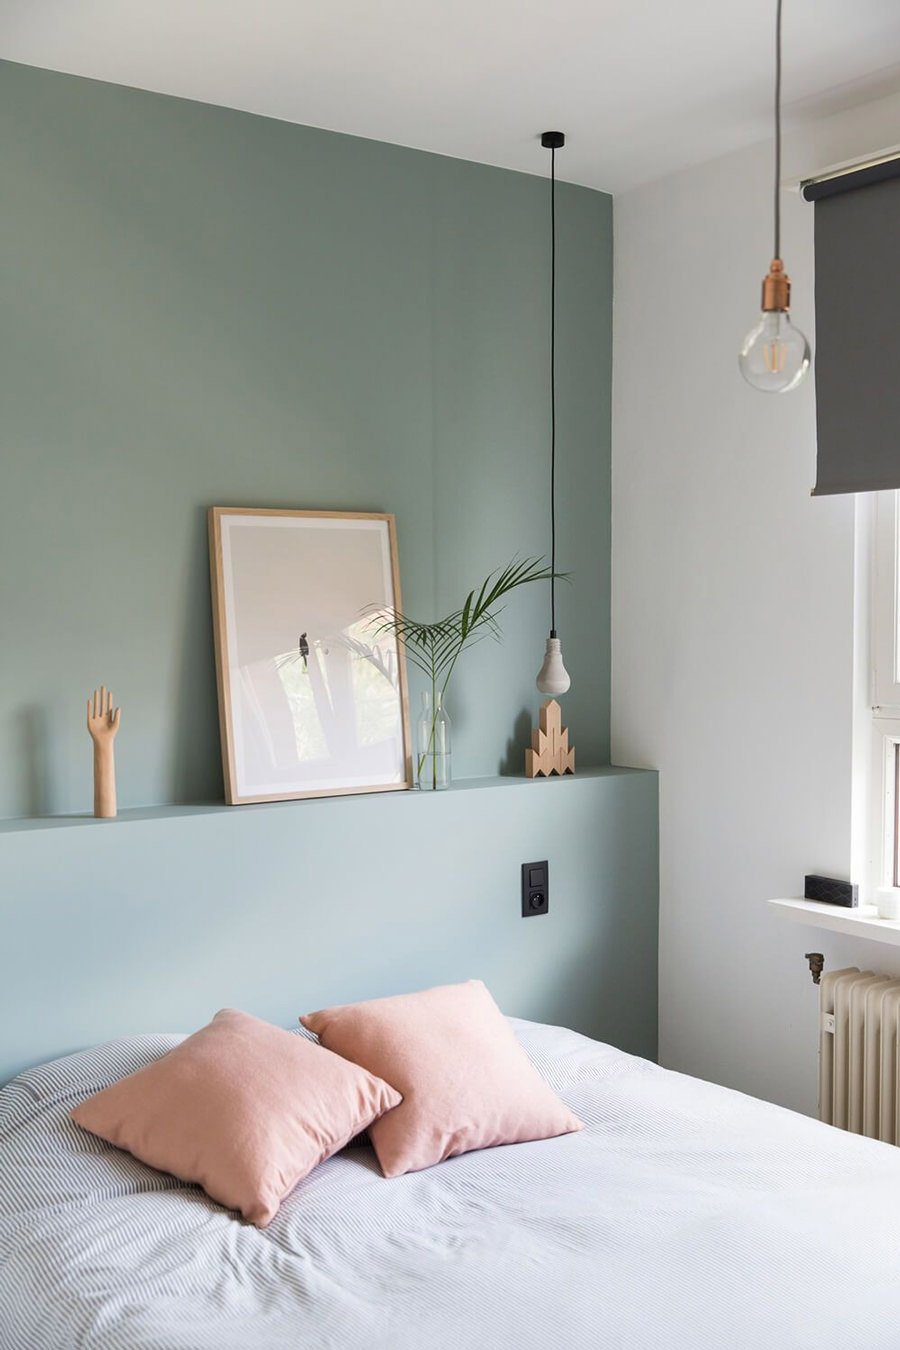 Elegante camera da letto verde acqua con piccola testiera in cartongesso che fa anche da mensola per vari oggetti decorativi. Stile contemporaneo, elegante e femminile. 